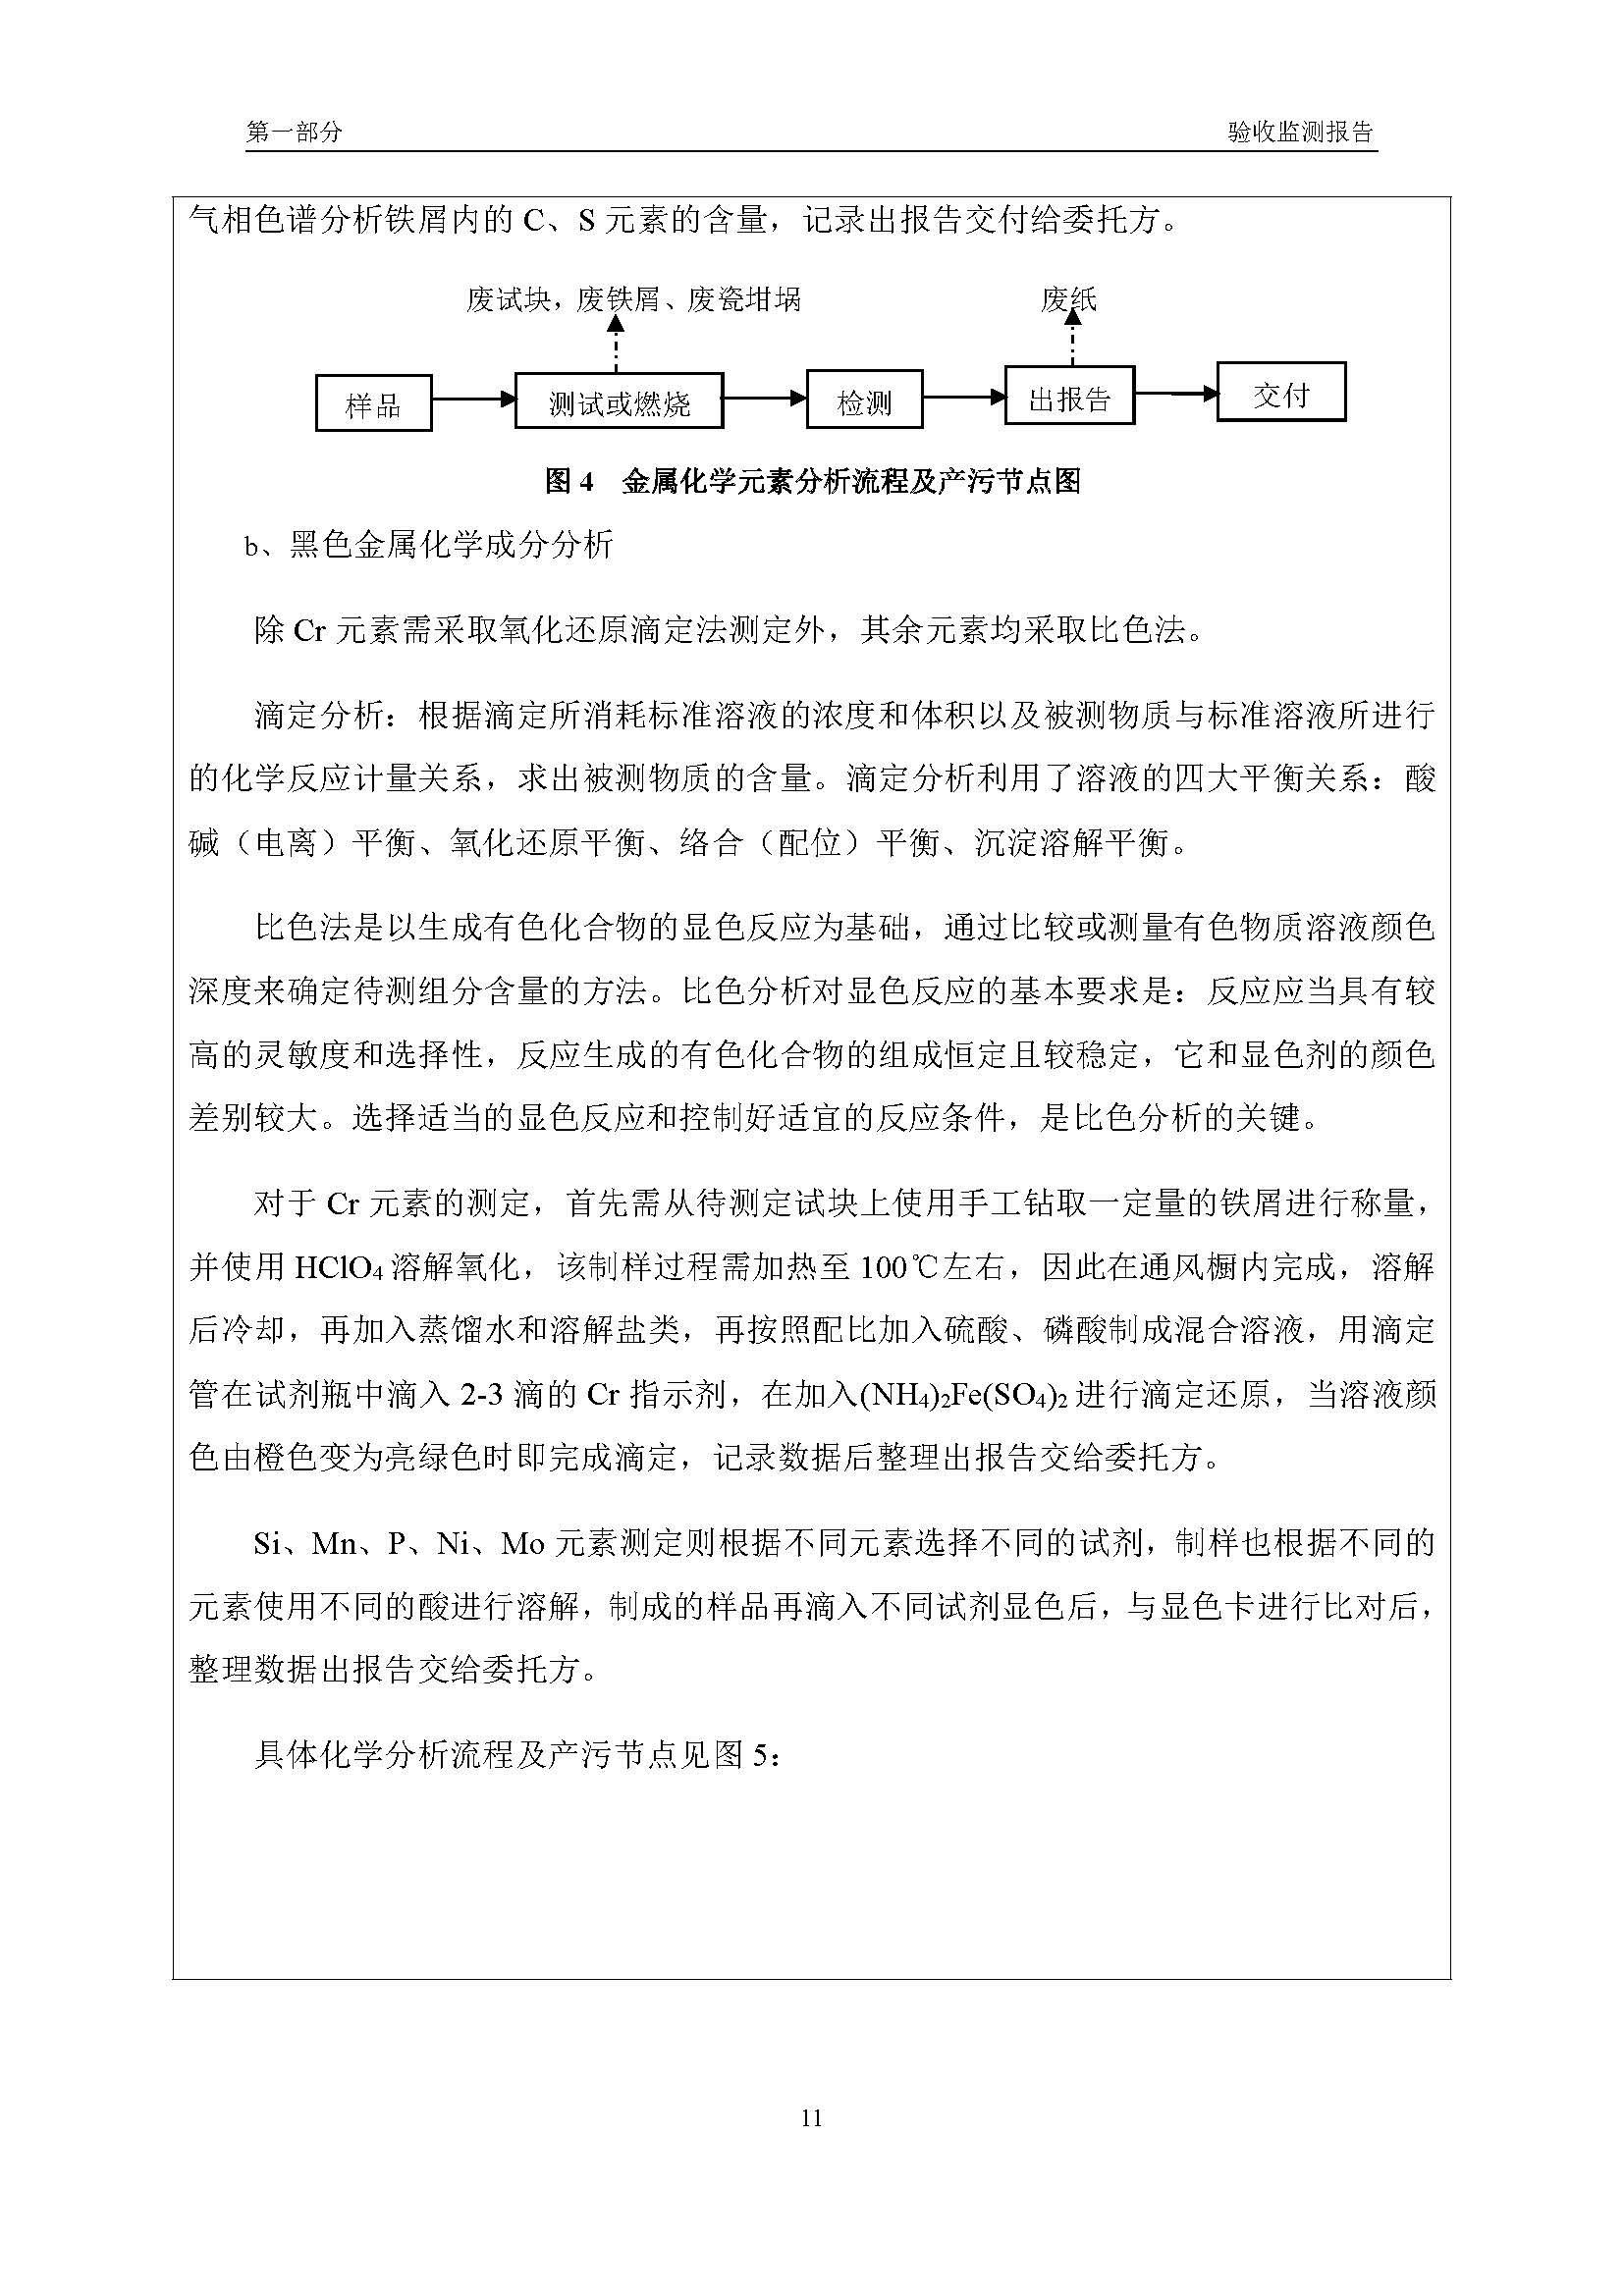 汉正检测环评验收报告 2018.05.31_页面_13.jpg